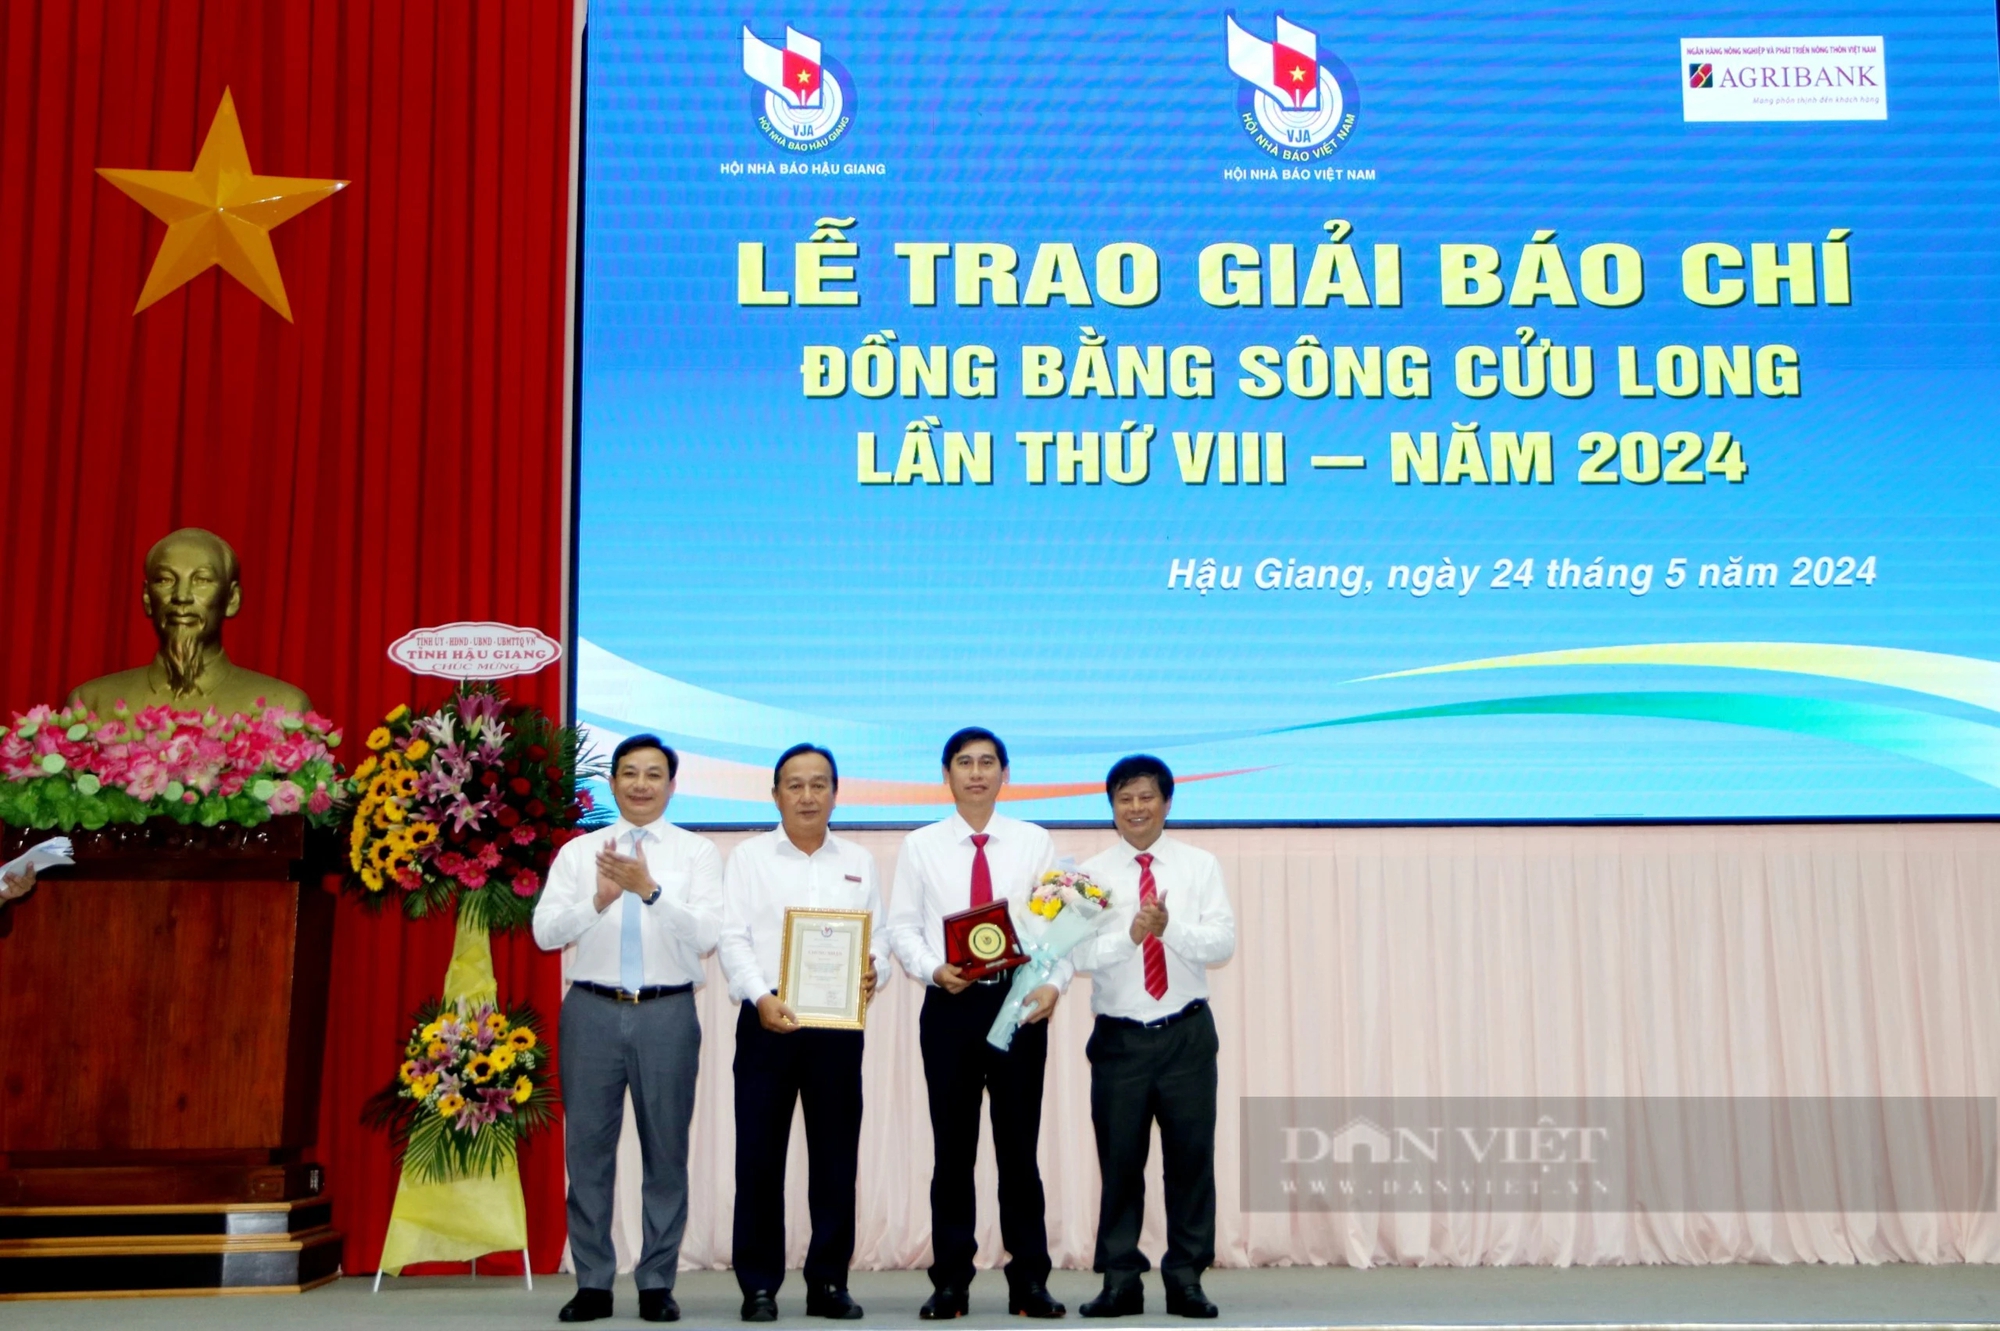 Agribank tài trợ giải Báo chí Đồng bằng sông Cửu Long lần thứ VIII - năm 2024- Ảnh 1.